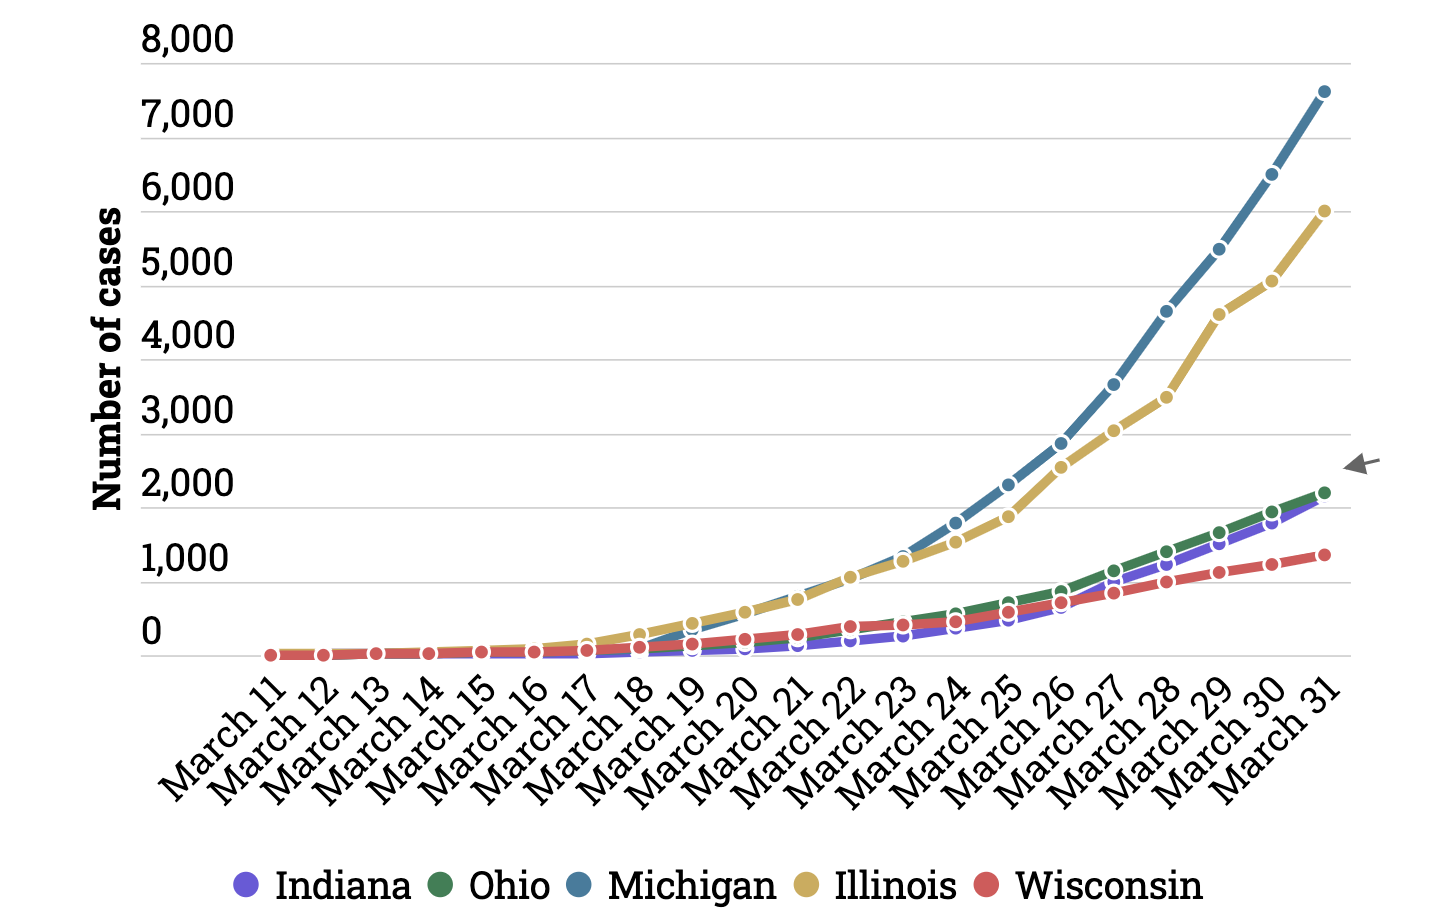 Why Did Coronavirus Spread So Fast In Michigan Compared To